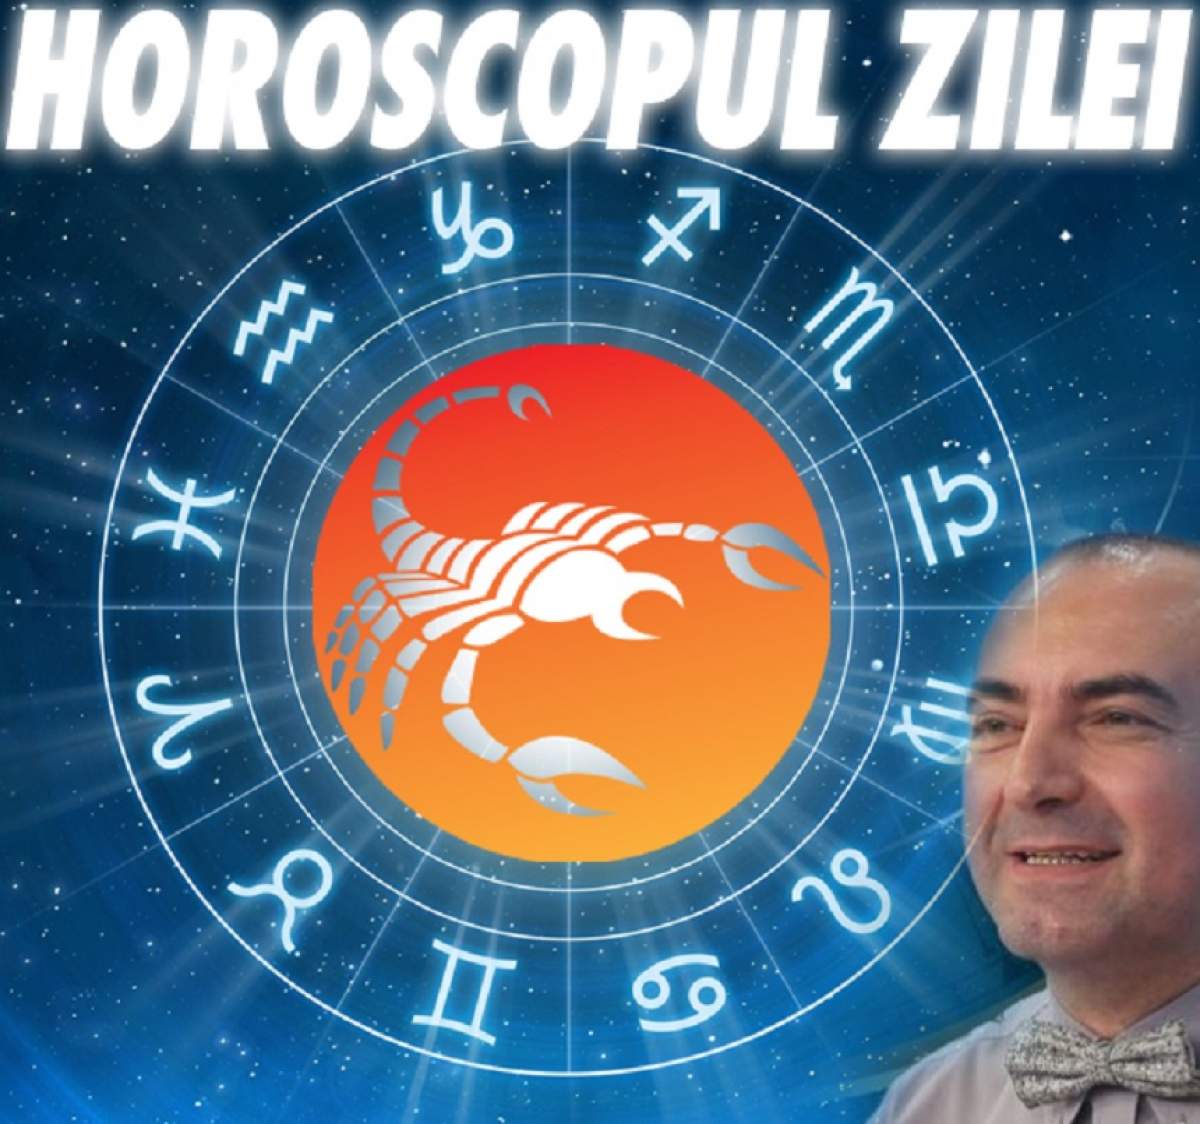 HOROSCOPUL ZILEI - 23 OCTOMBRIE: Nativii Scorpion vor avea parte de câștiguri financiare